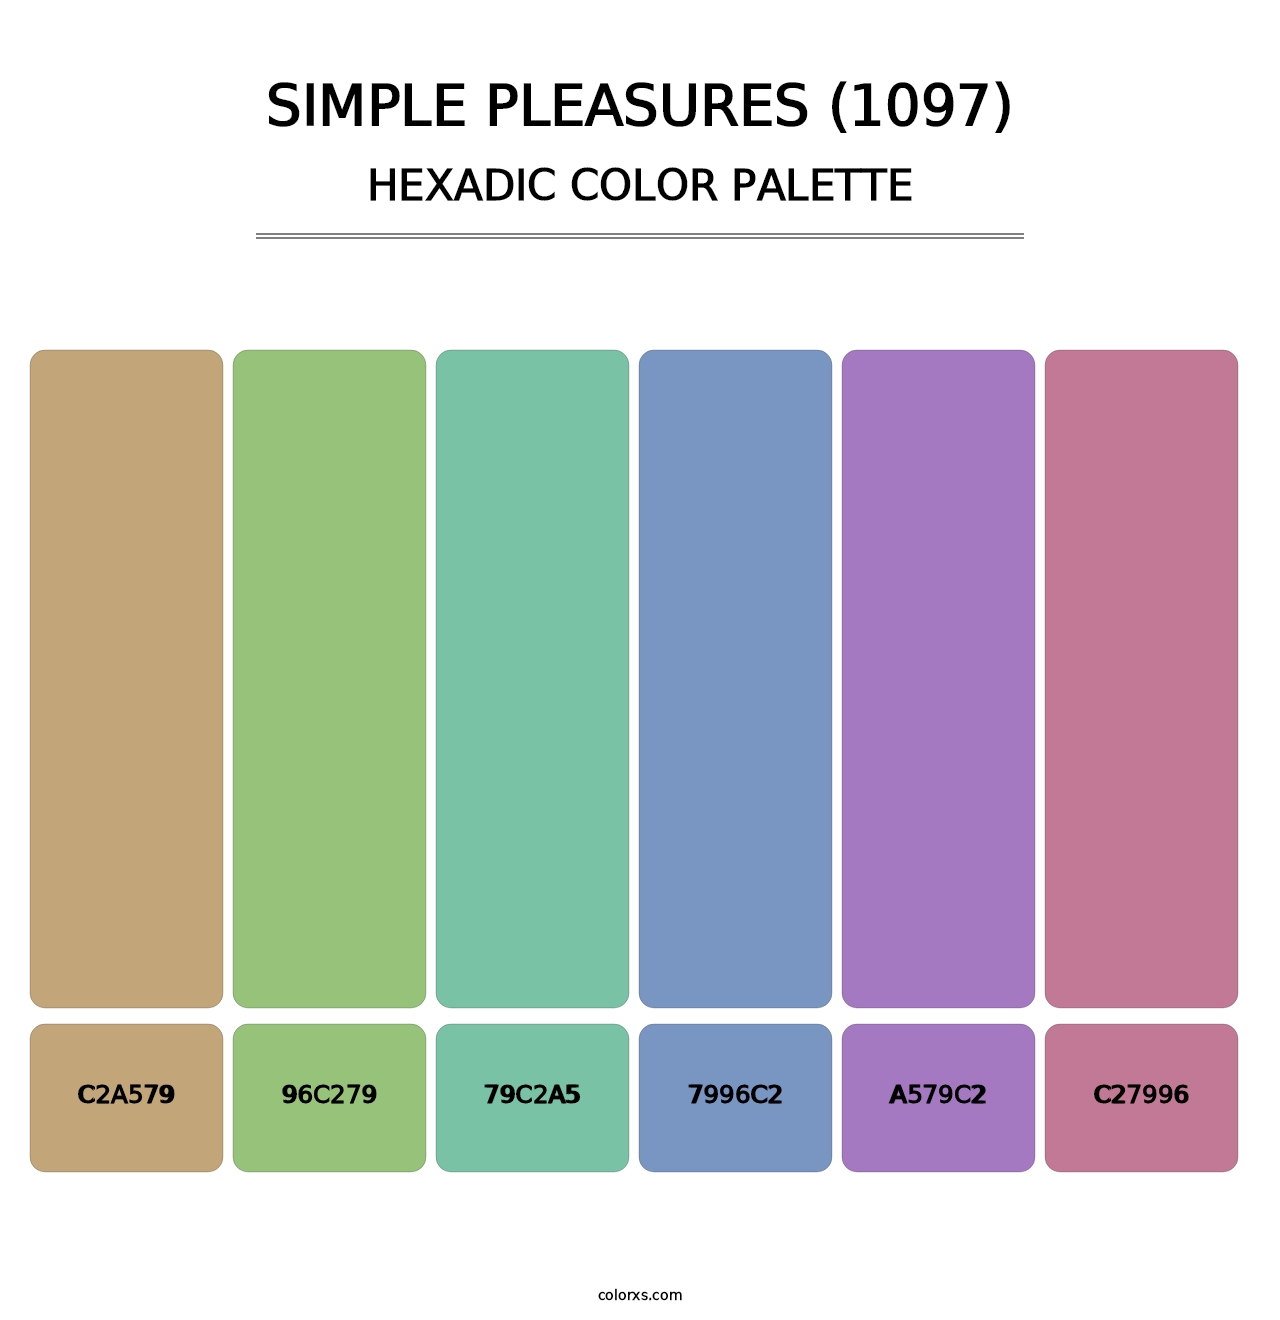 Simple Pleasures (1097) - Hexadic Color Palette